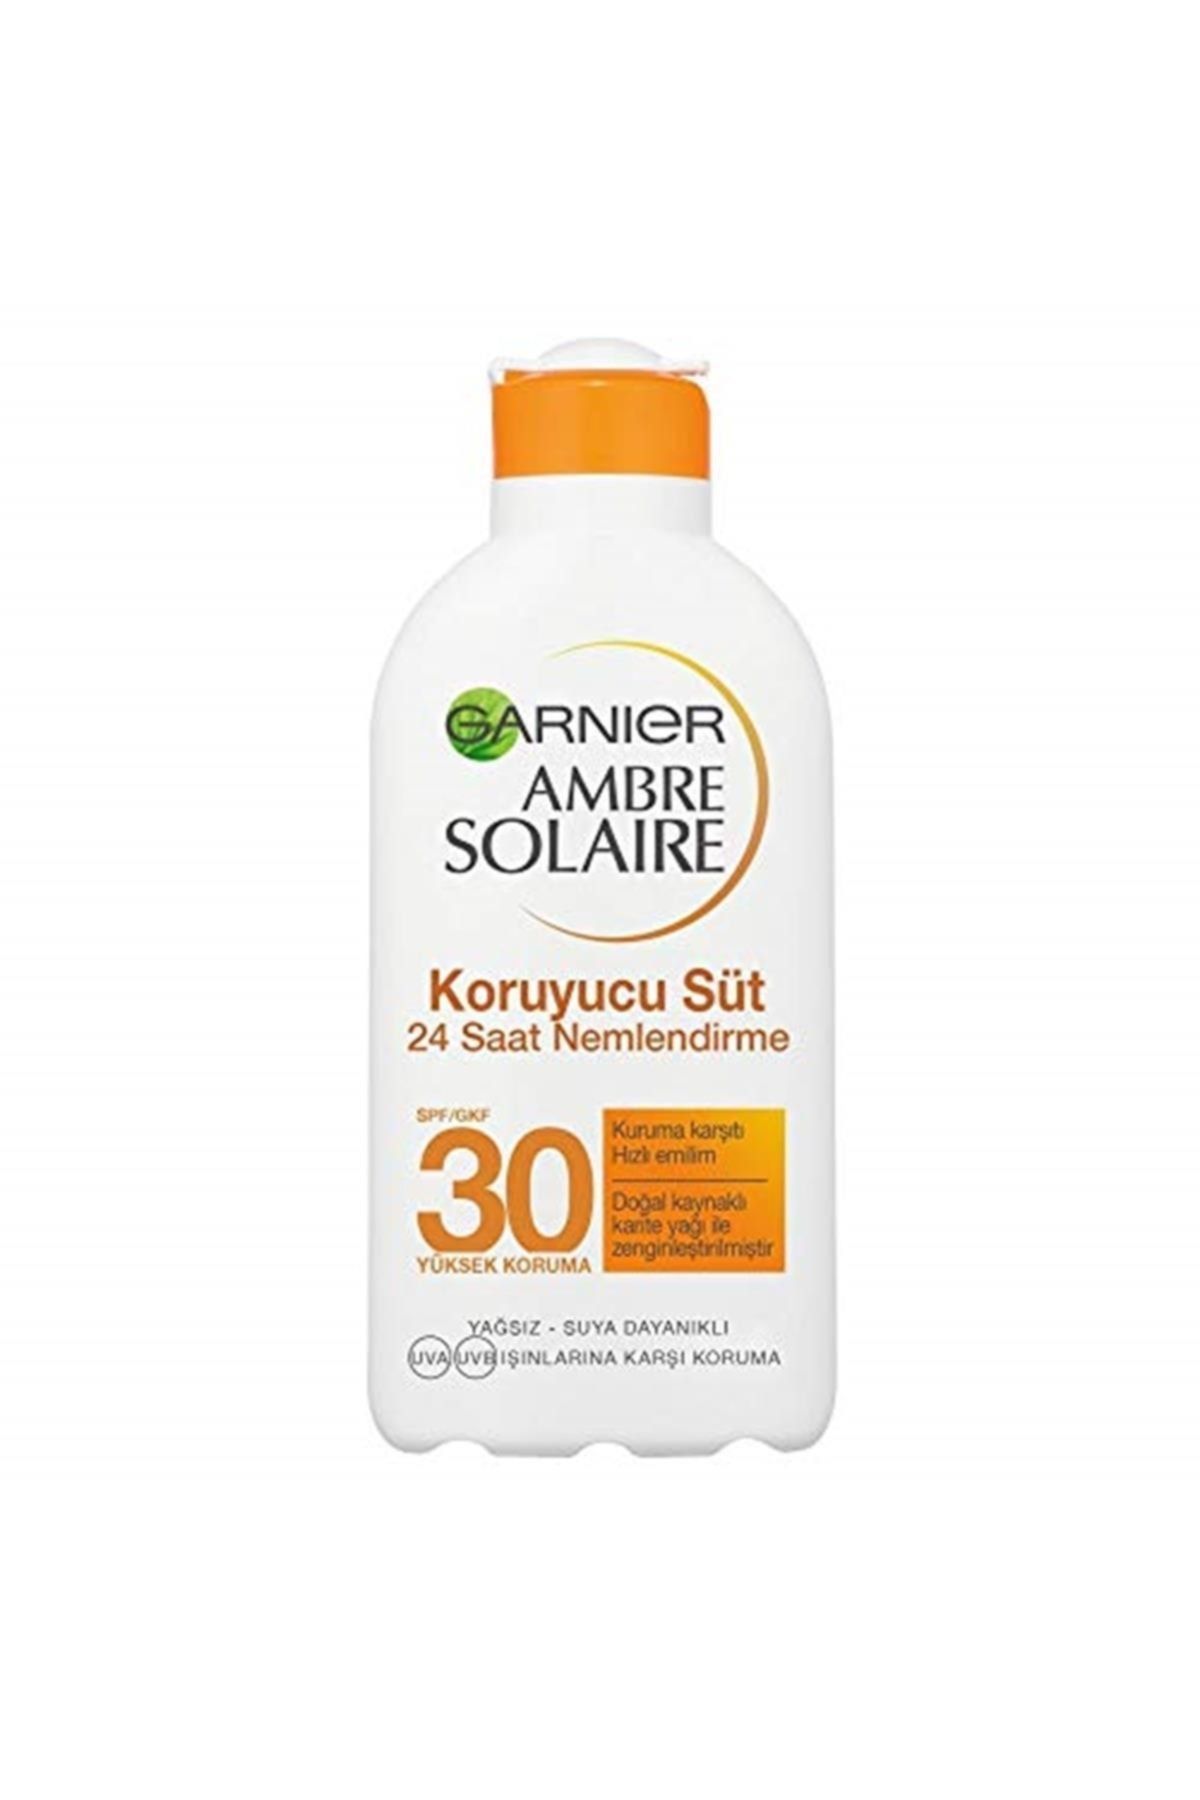 Garnier Skin Naturals Ambre Solaire Koruyucu Süt Gkf30 200ml 1 X 200ml